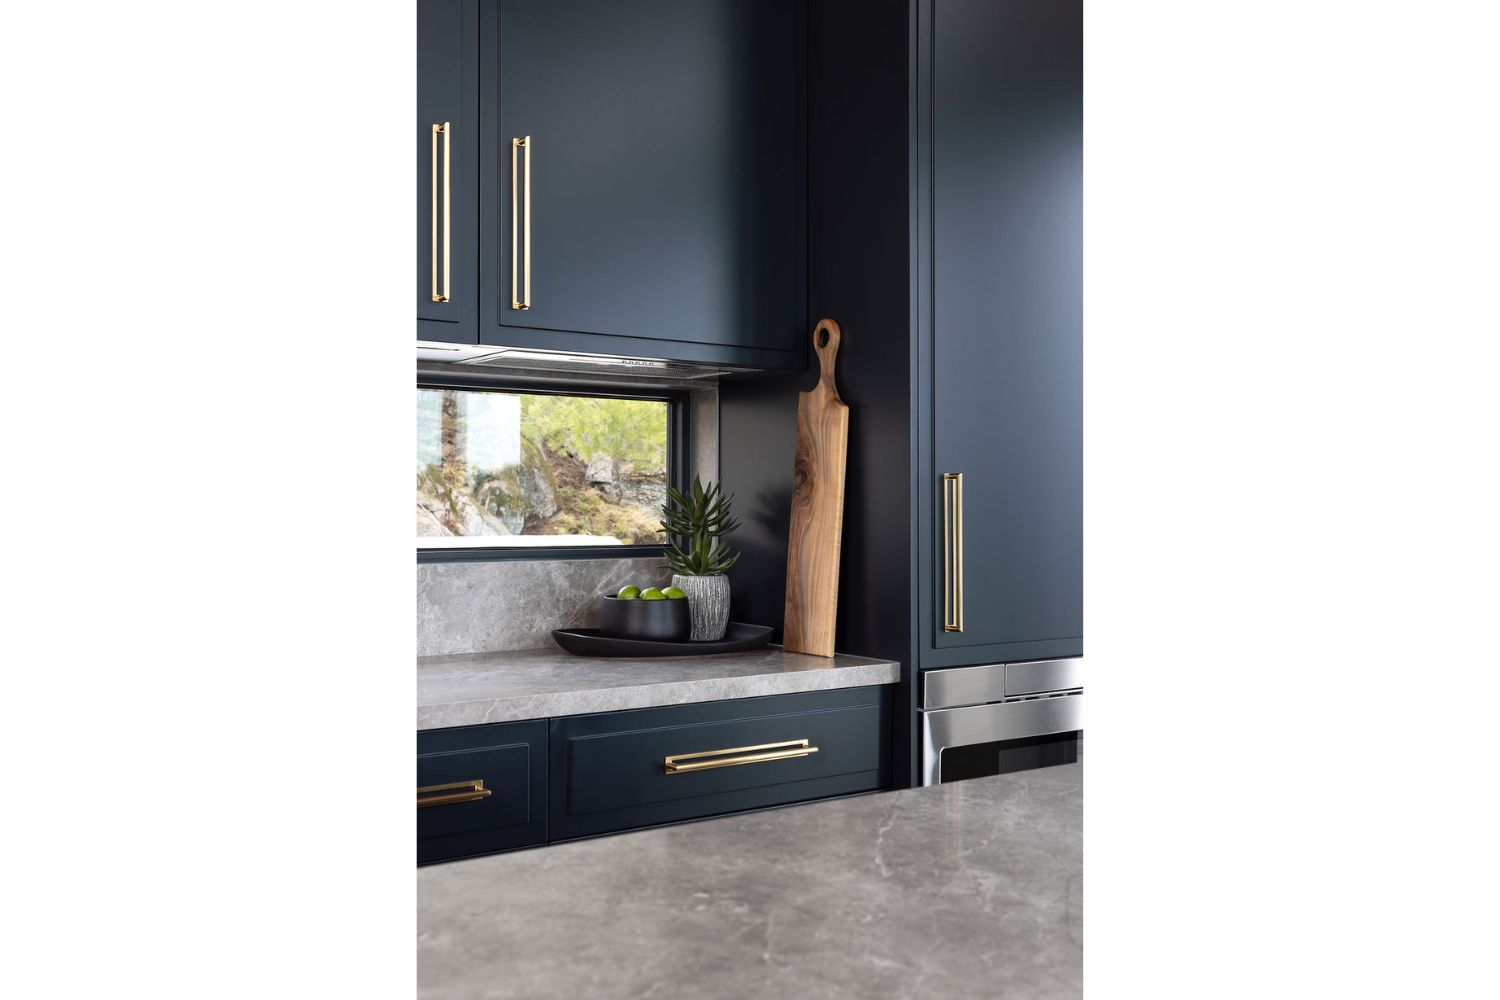 Project Cedar Rail: Custom Black Kitchen Cabinets